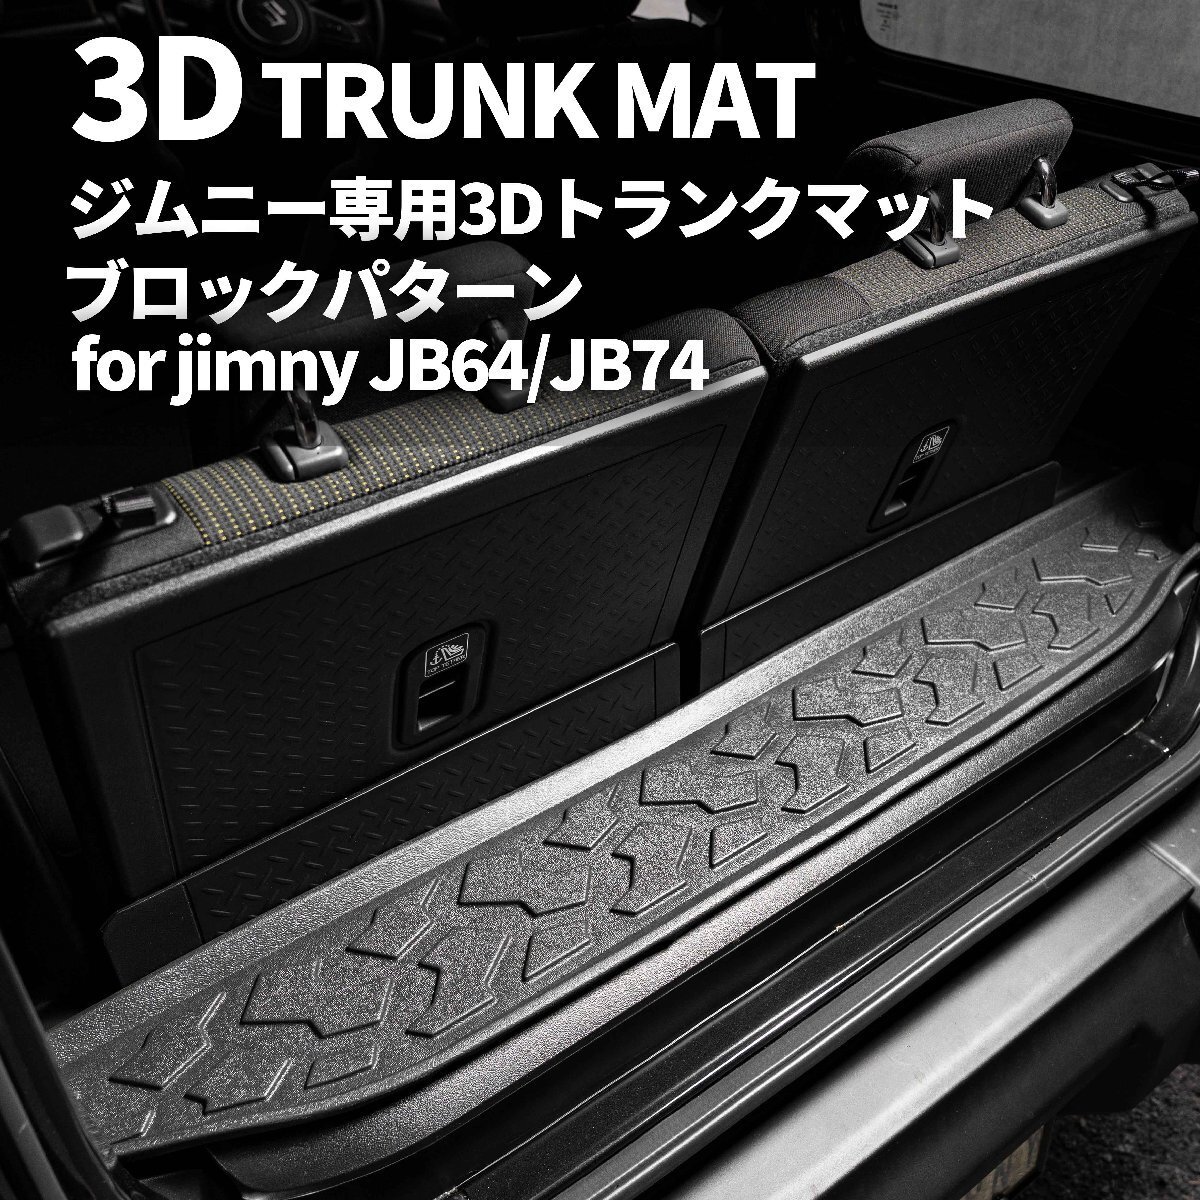  ограниченное количество \\1 старт новая модель Jimny JB64/ Jimny Sierra JB74 3D покрытие пола багажника ( блок образец ) марка машины особый дизайн водонепроницаемый . грязный 